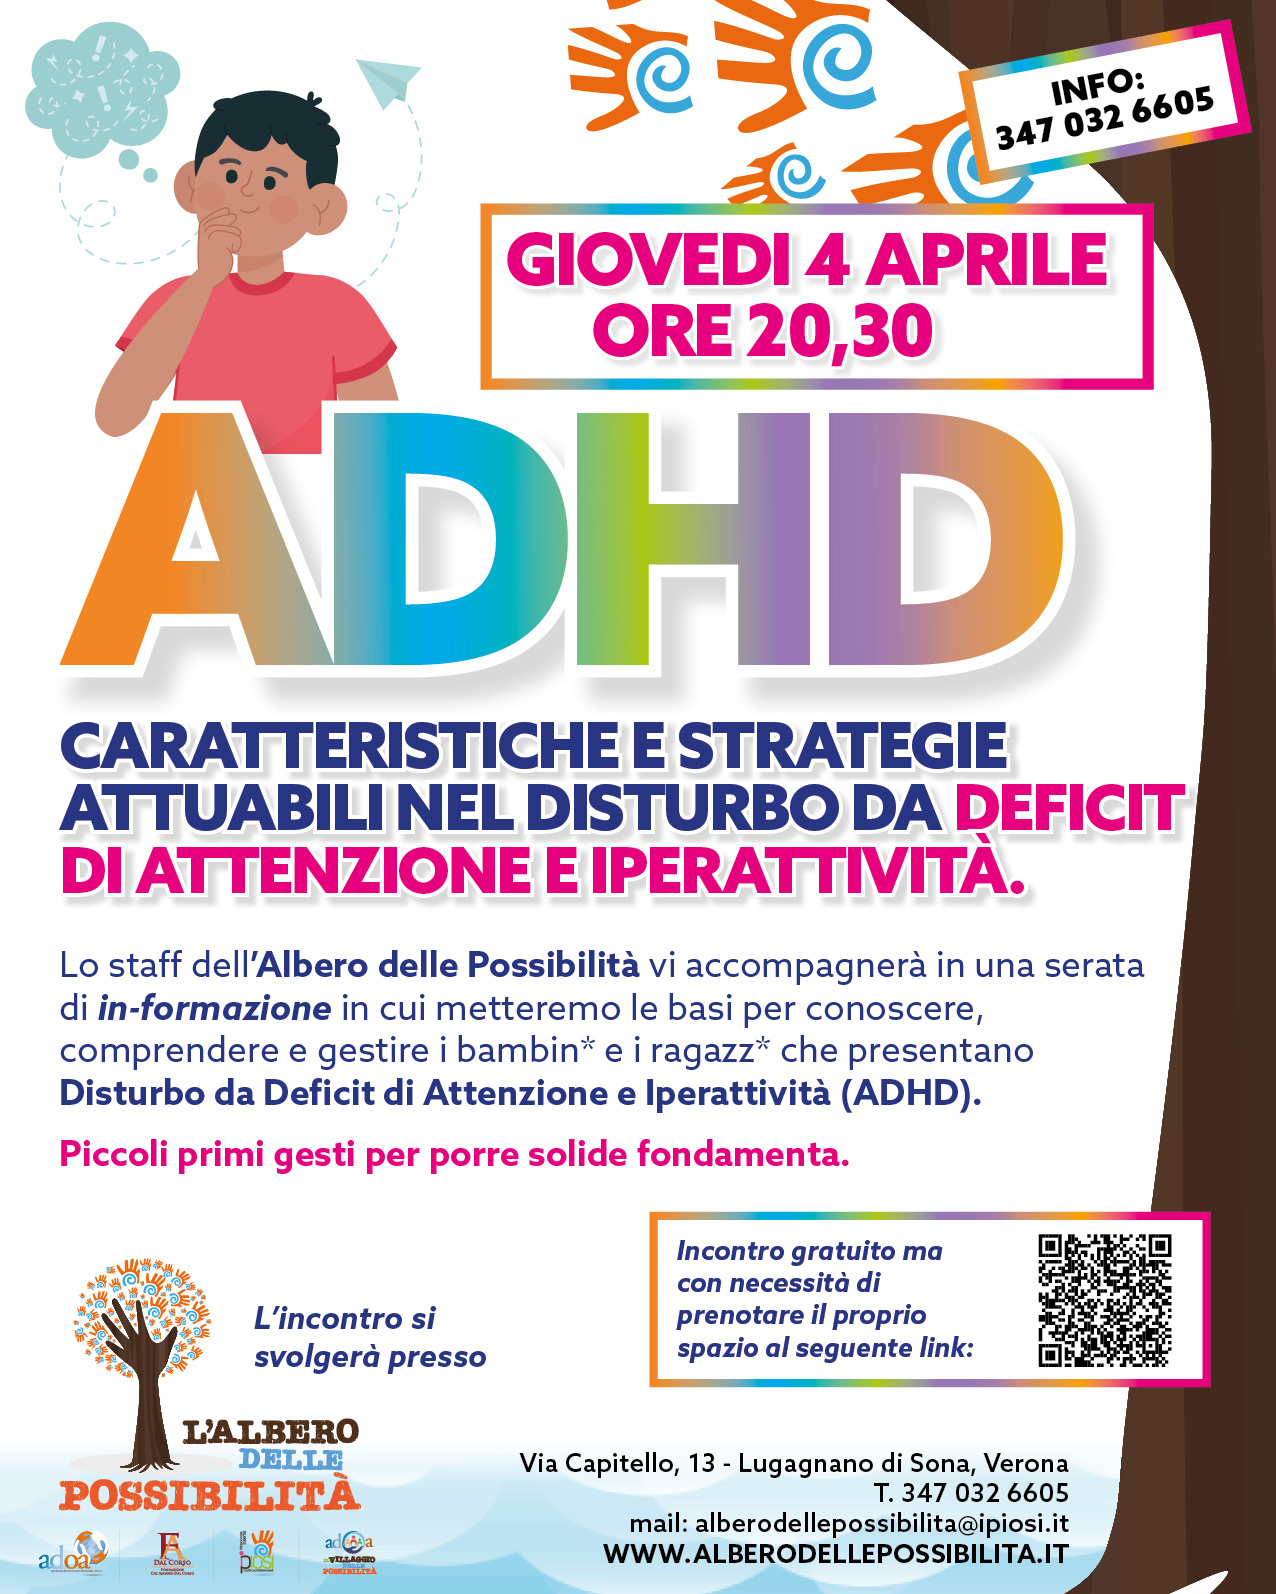 ADHD - Deficit di attenzione e iperattività